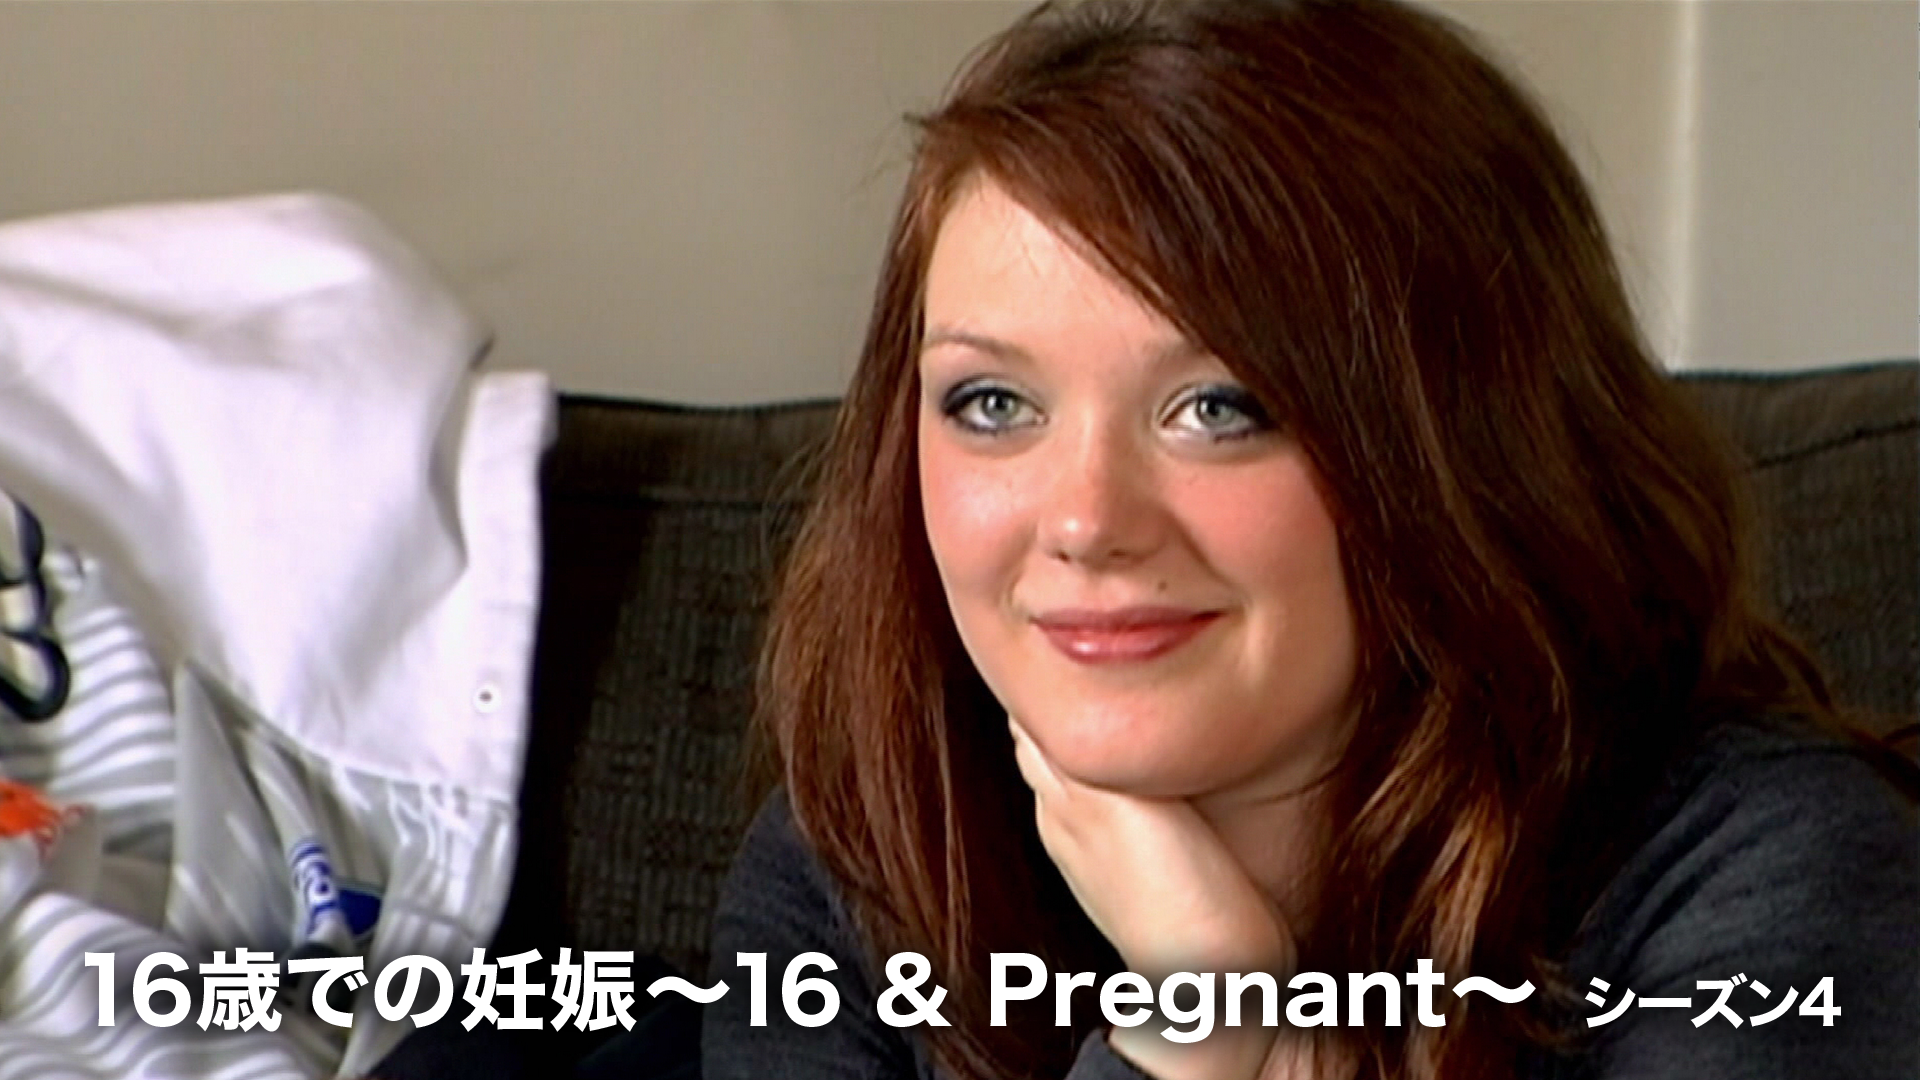 16歳での妊娠 ～16 & Pregnant～ シーズン4の動画 - 16歳での妊娠 ～16 & Pregnant～ シーズン3